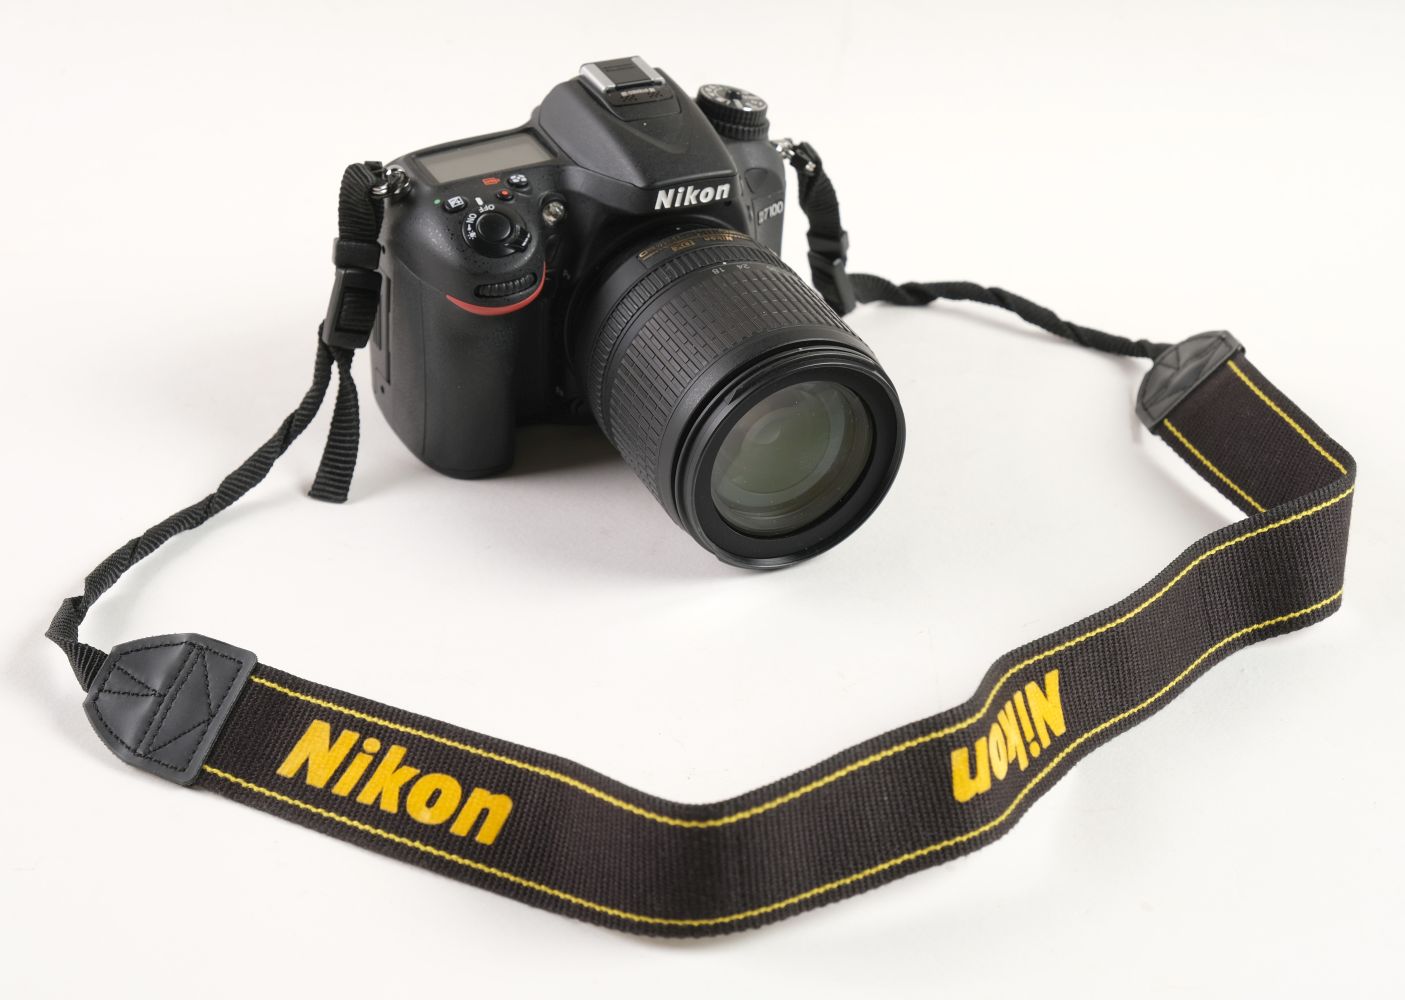 * Nikon D7100 Digital Camera (DSLR) with VR AF-S 18-105mm lens (boxed) plus other camera equipment